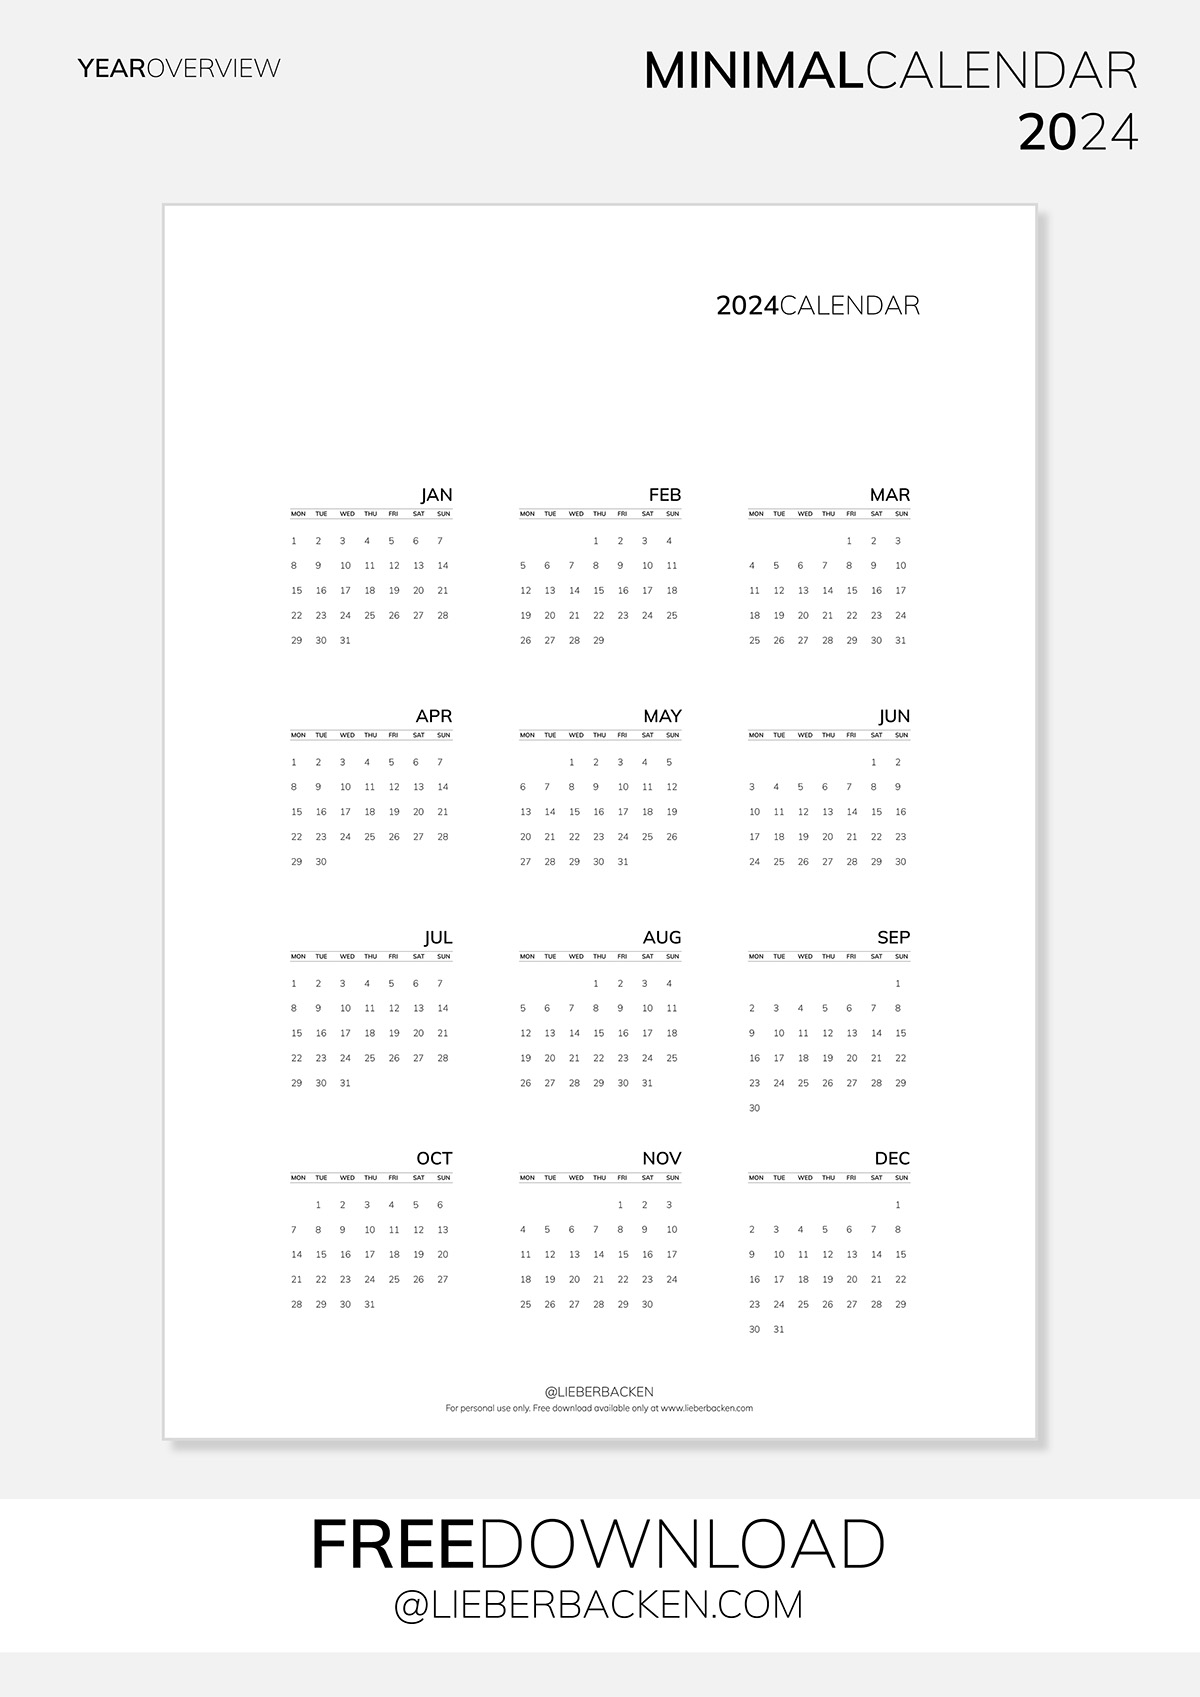 Year Overview | Gratis Kalender 2024 kostenfreier Download